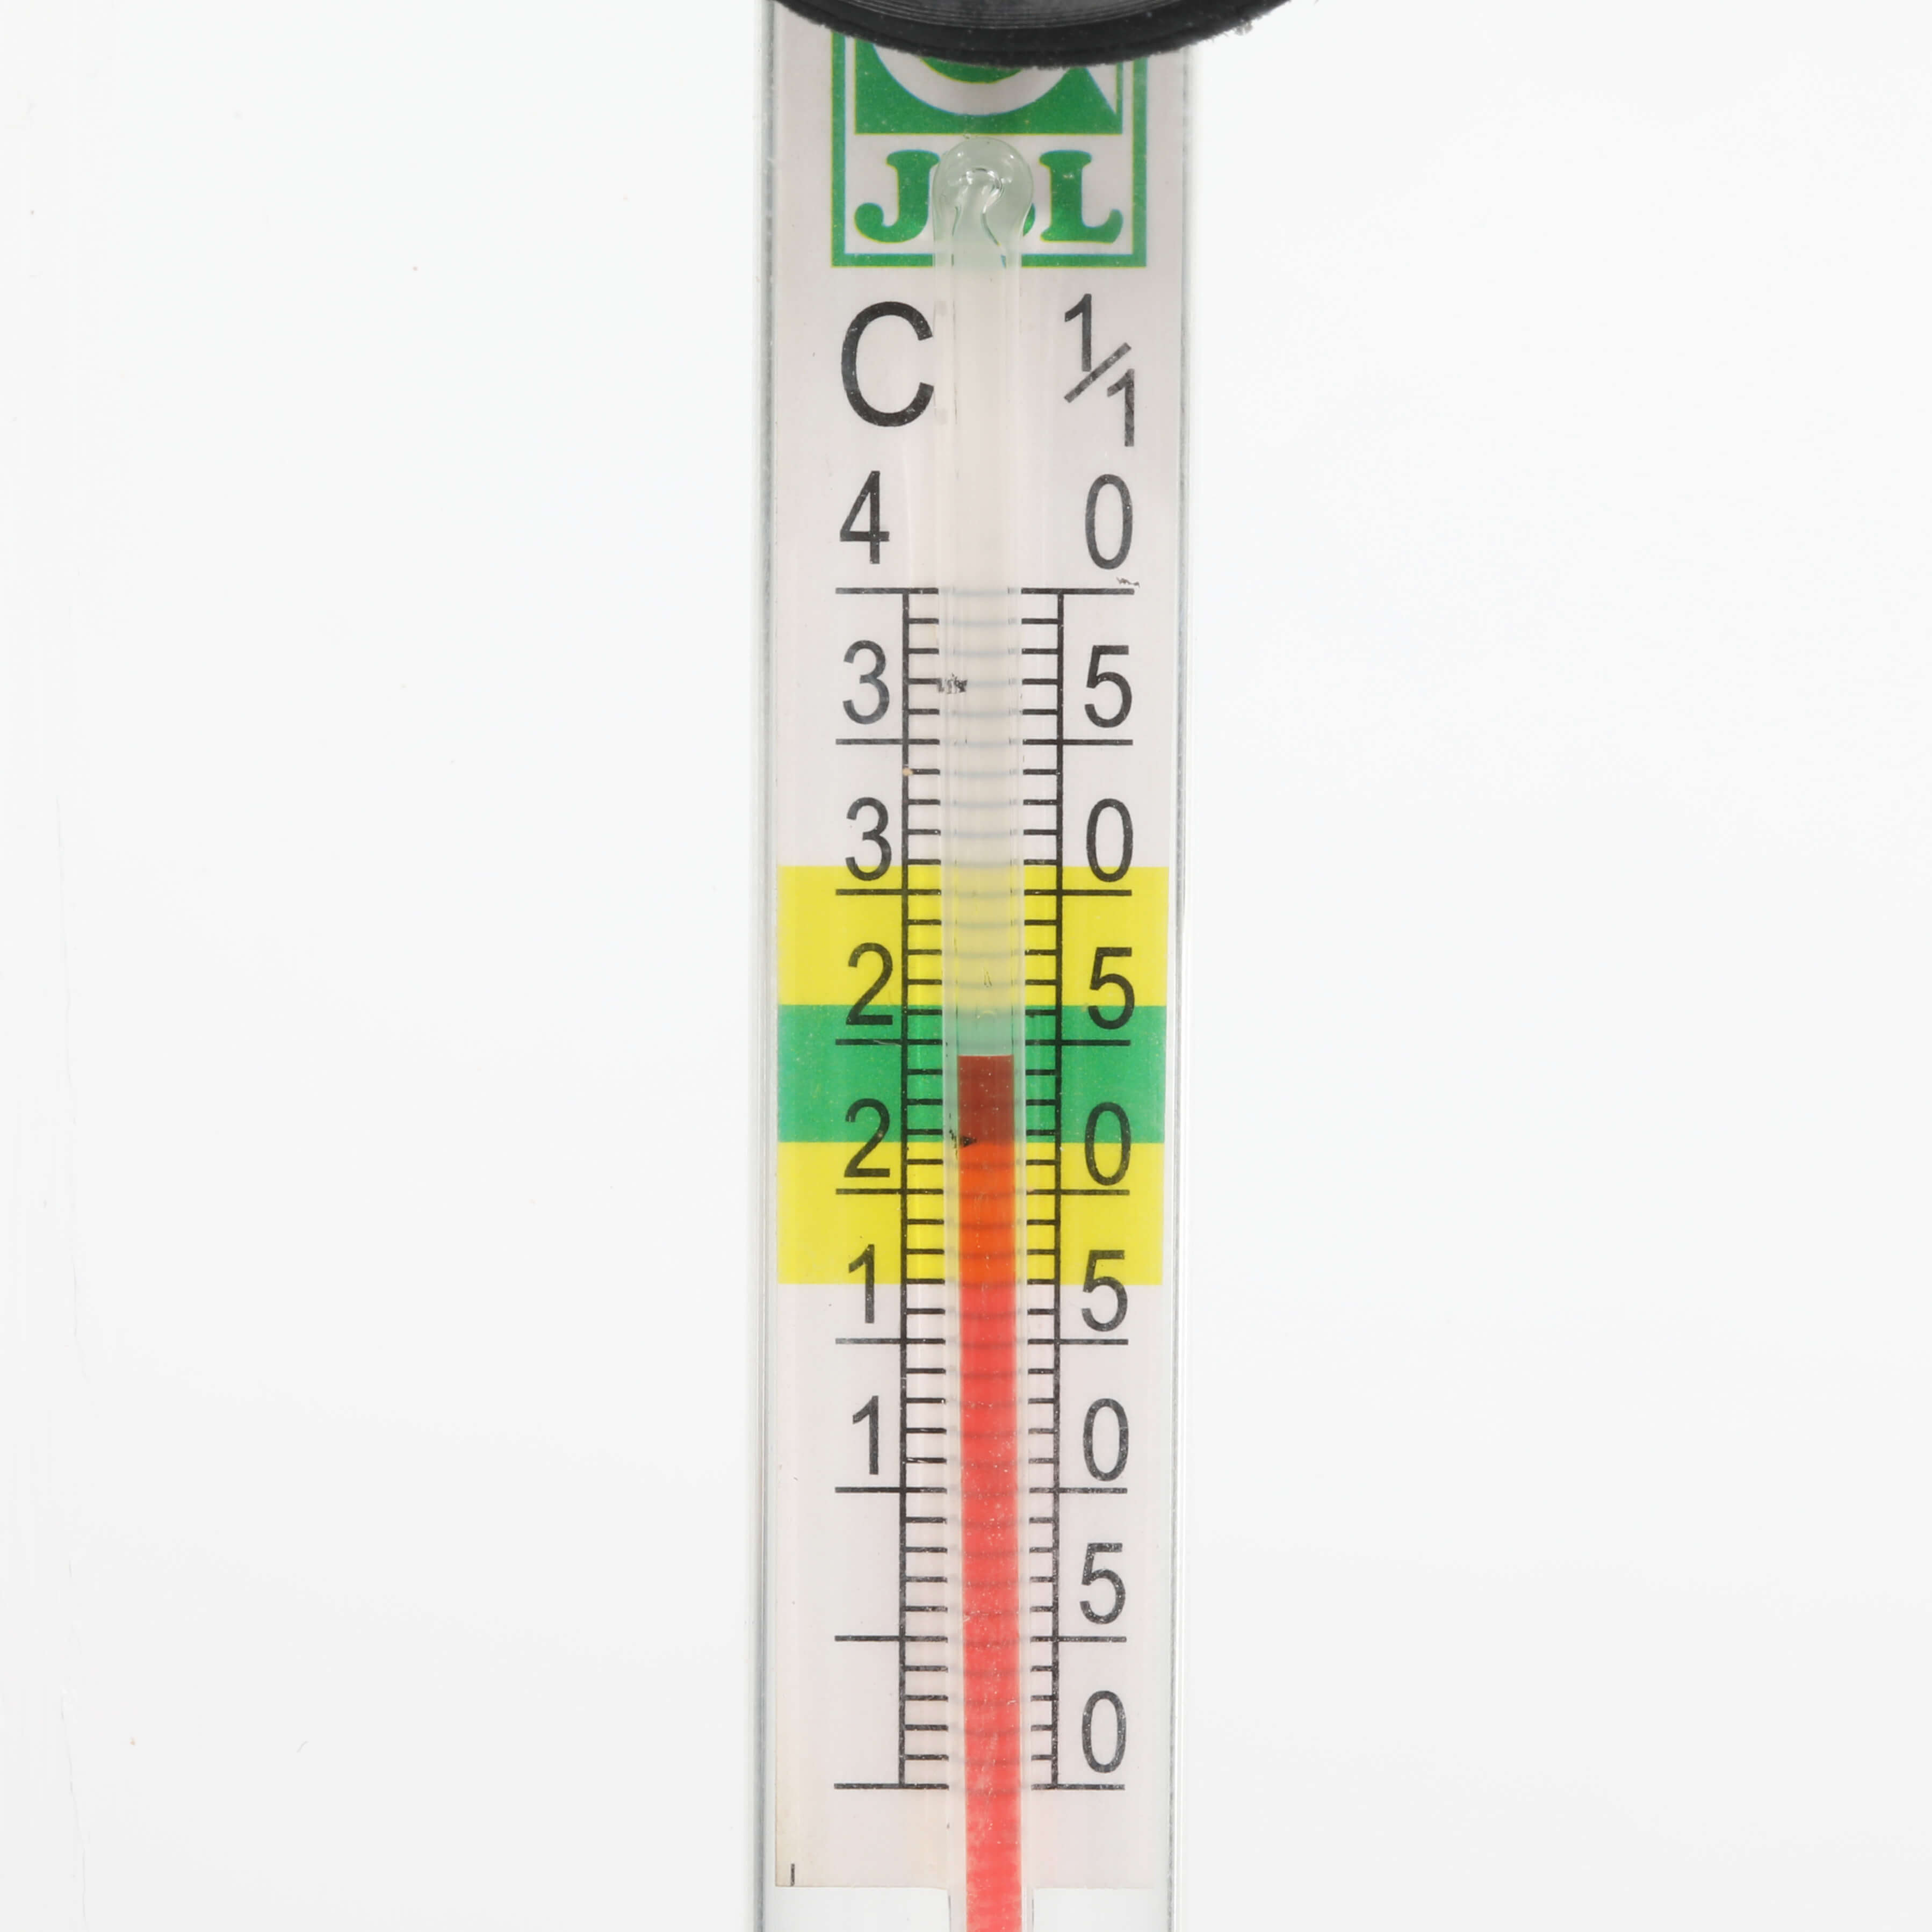 Thermomètre avec ventouse JBl - VPC RecifAtHome